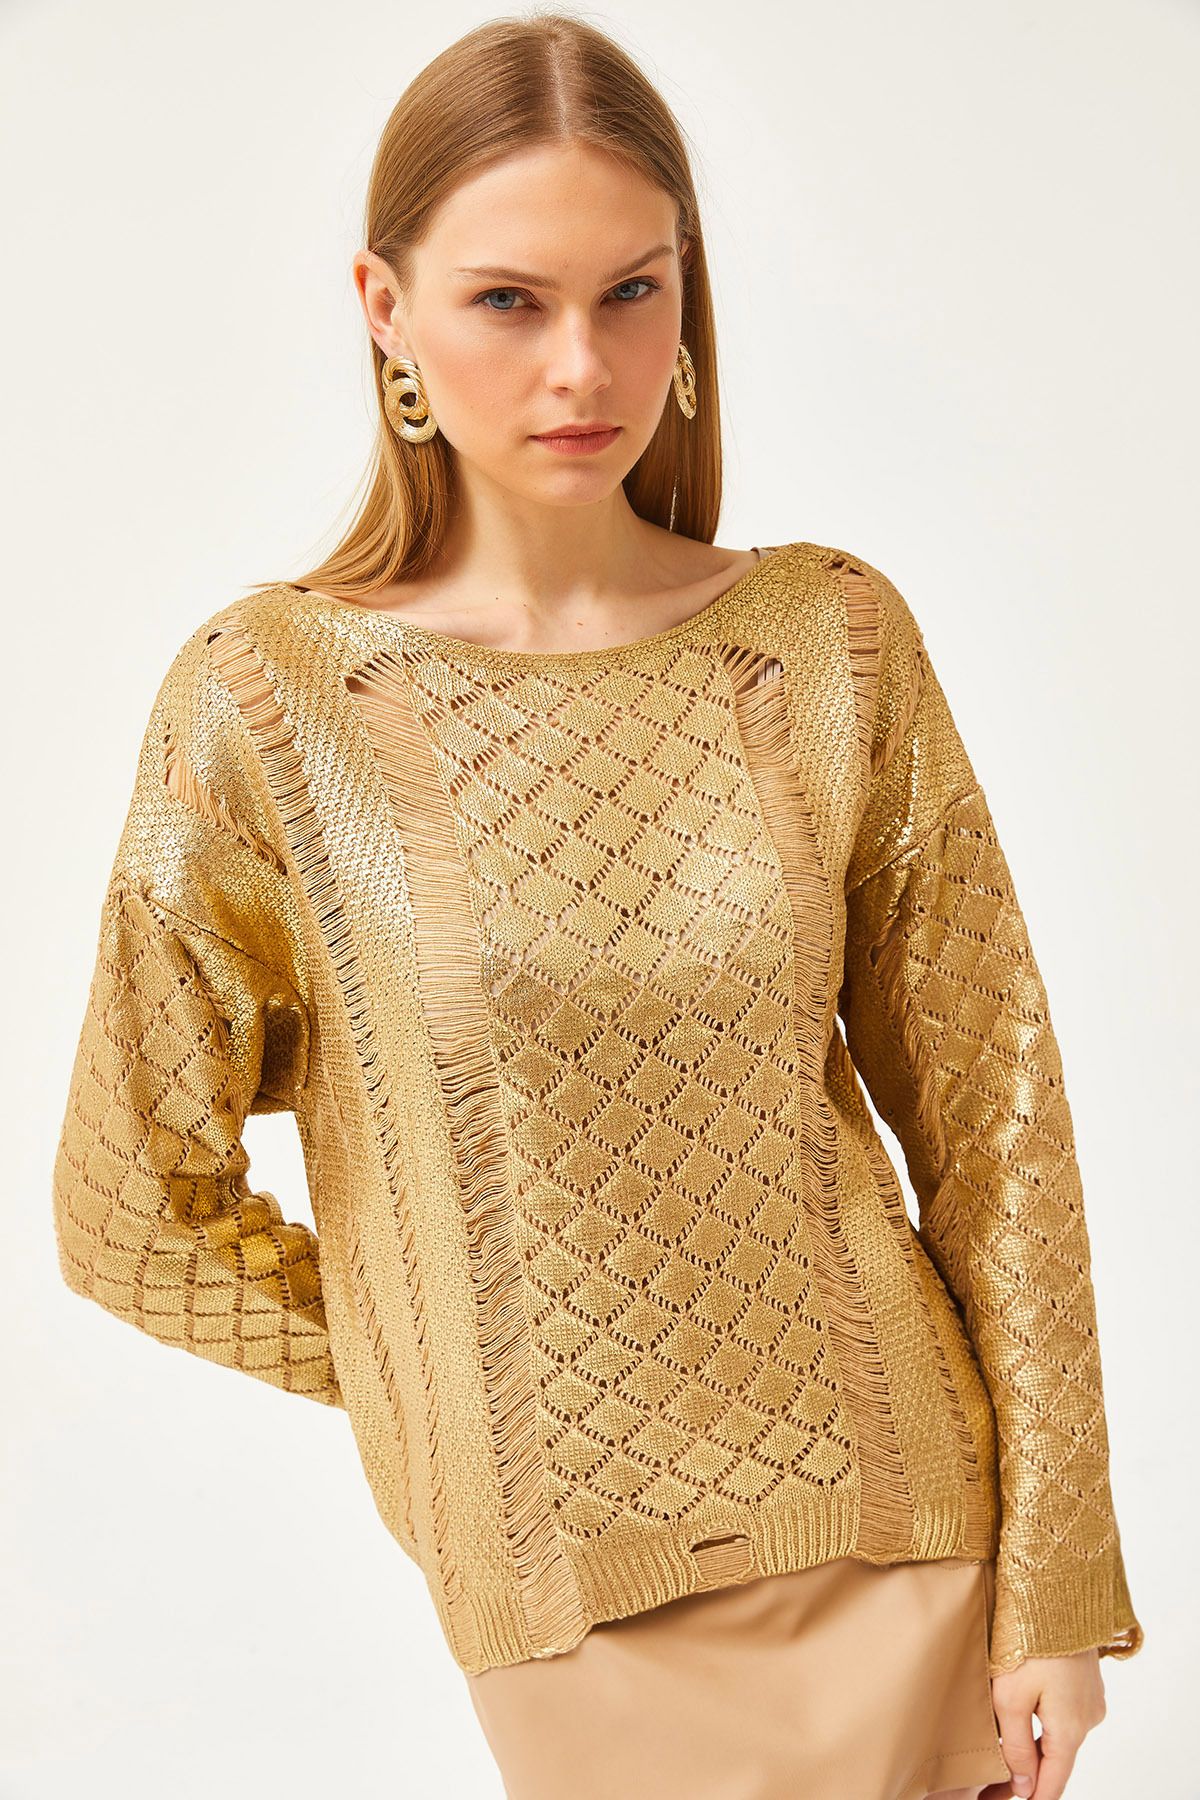 Olalook Kadın Altın Ajurlu Salaş Metalik Triko Bluz BLZ-19002529